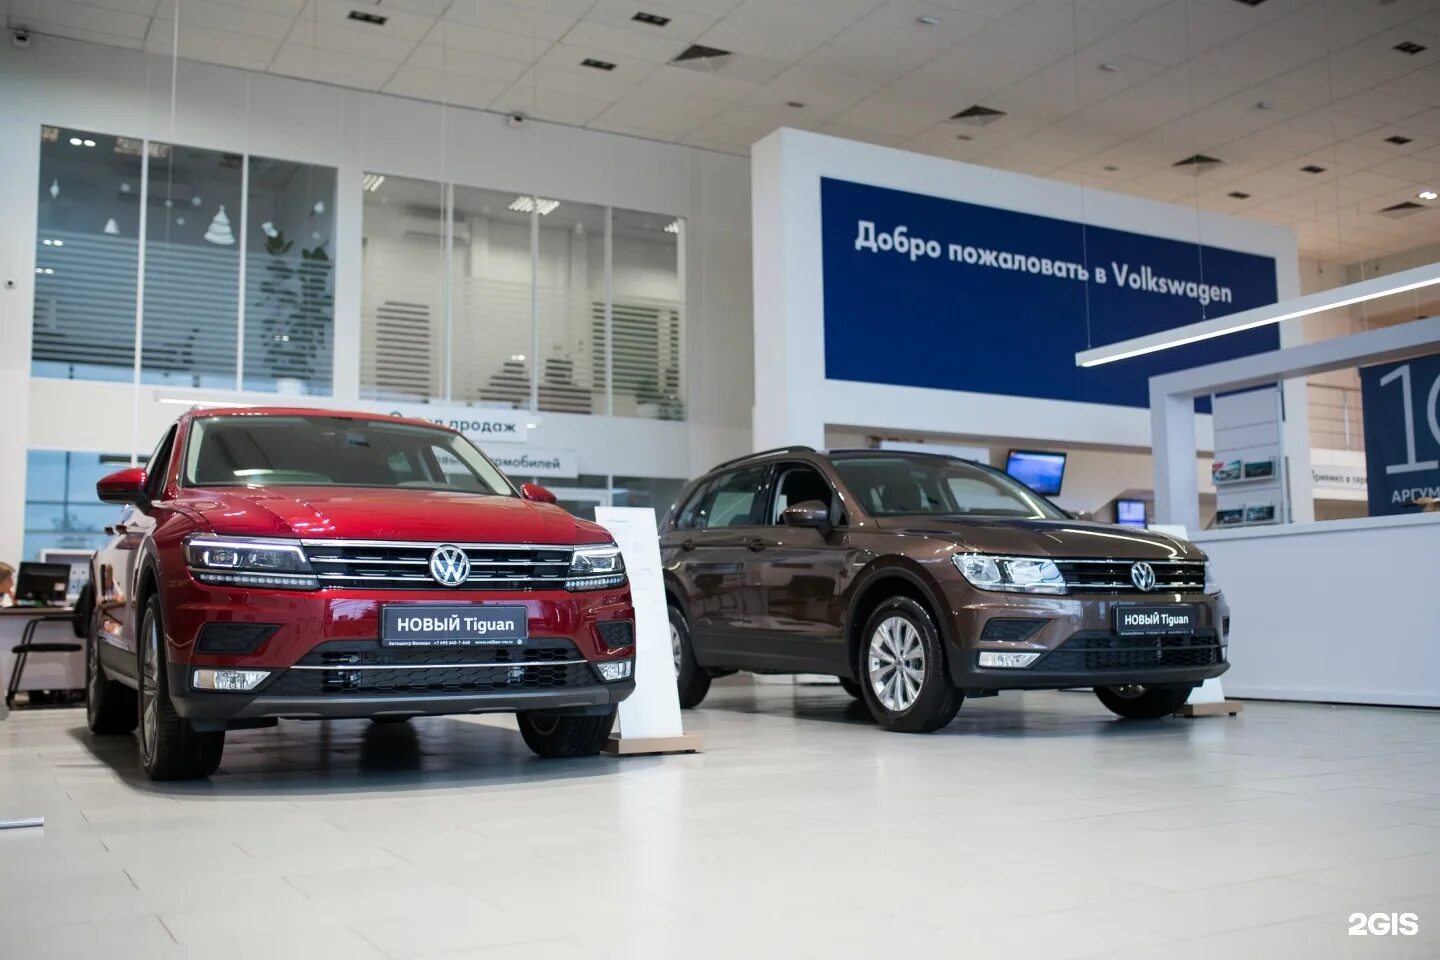 Фольксваген купить в москве у официального дилера. Автосалон Фольксваген. Великан Volkswagen.